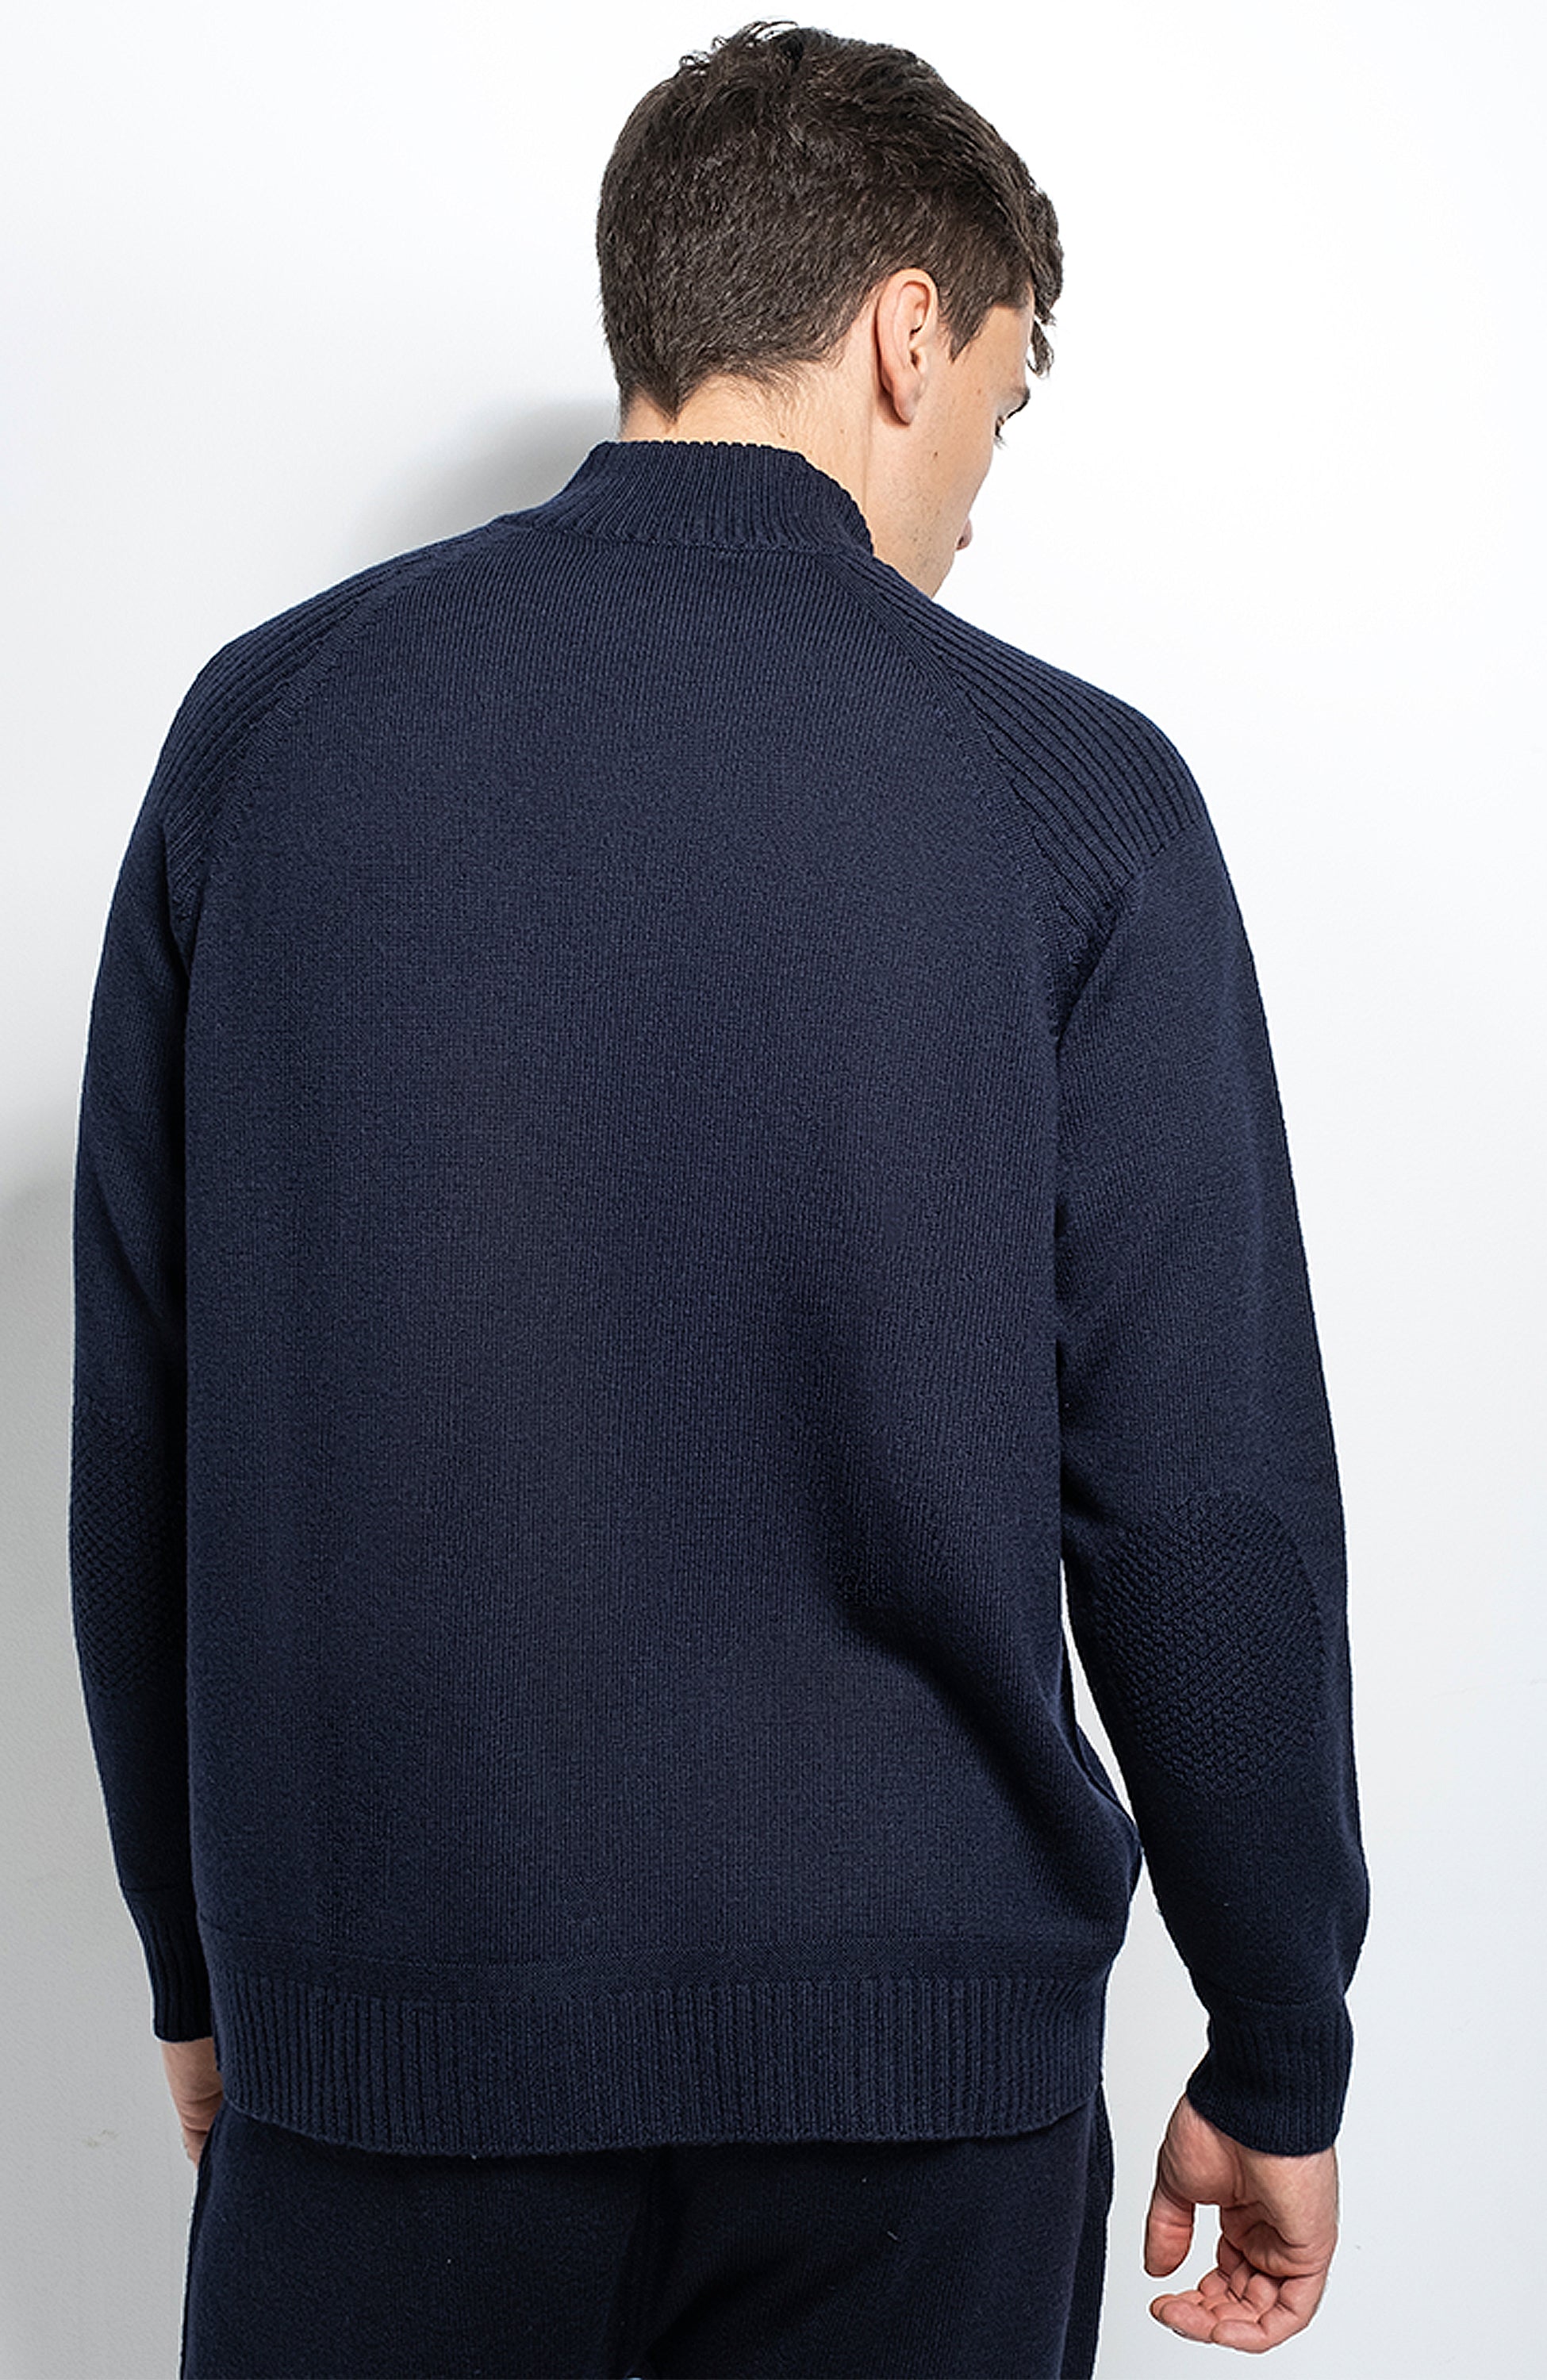 Half-zipped merino sweater